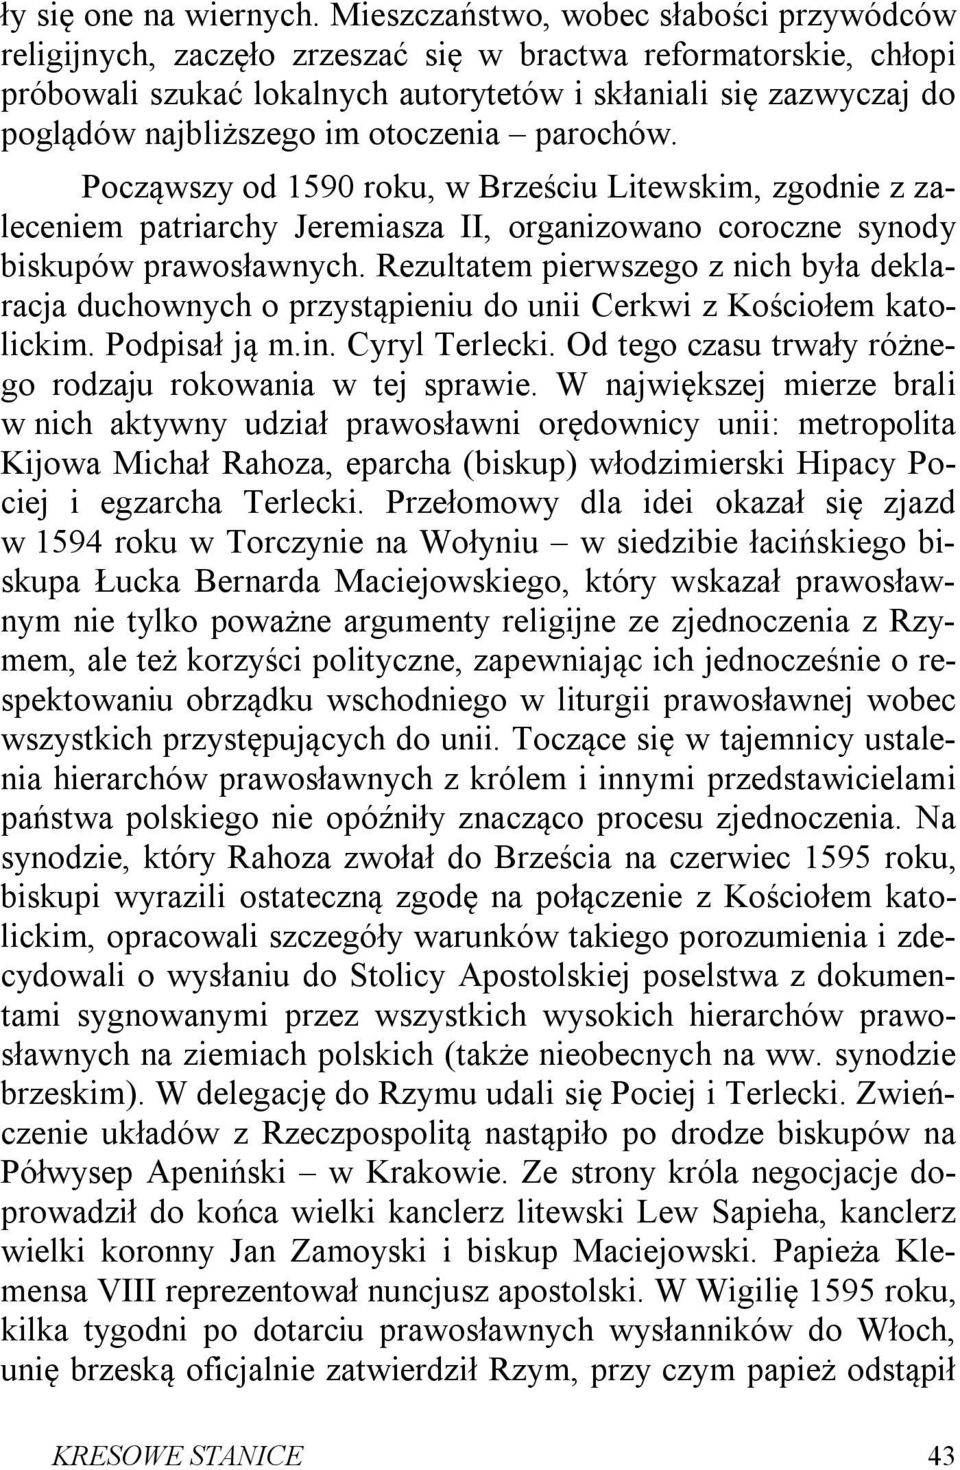 im otoczenia parochów. Począwszy od 1590 roku, w Brześciu Litewskim, zgodnie z zaleceniem patriarchy Jeremiasza II, organizowano coroczne synody biskupów prawosławnych.